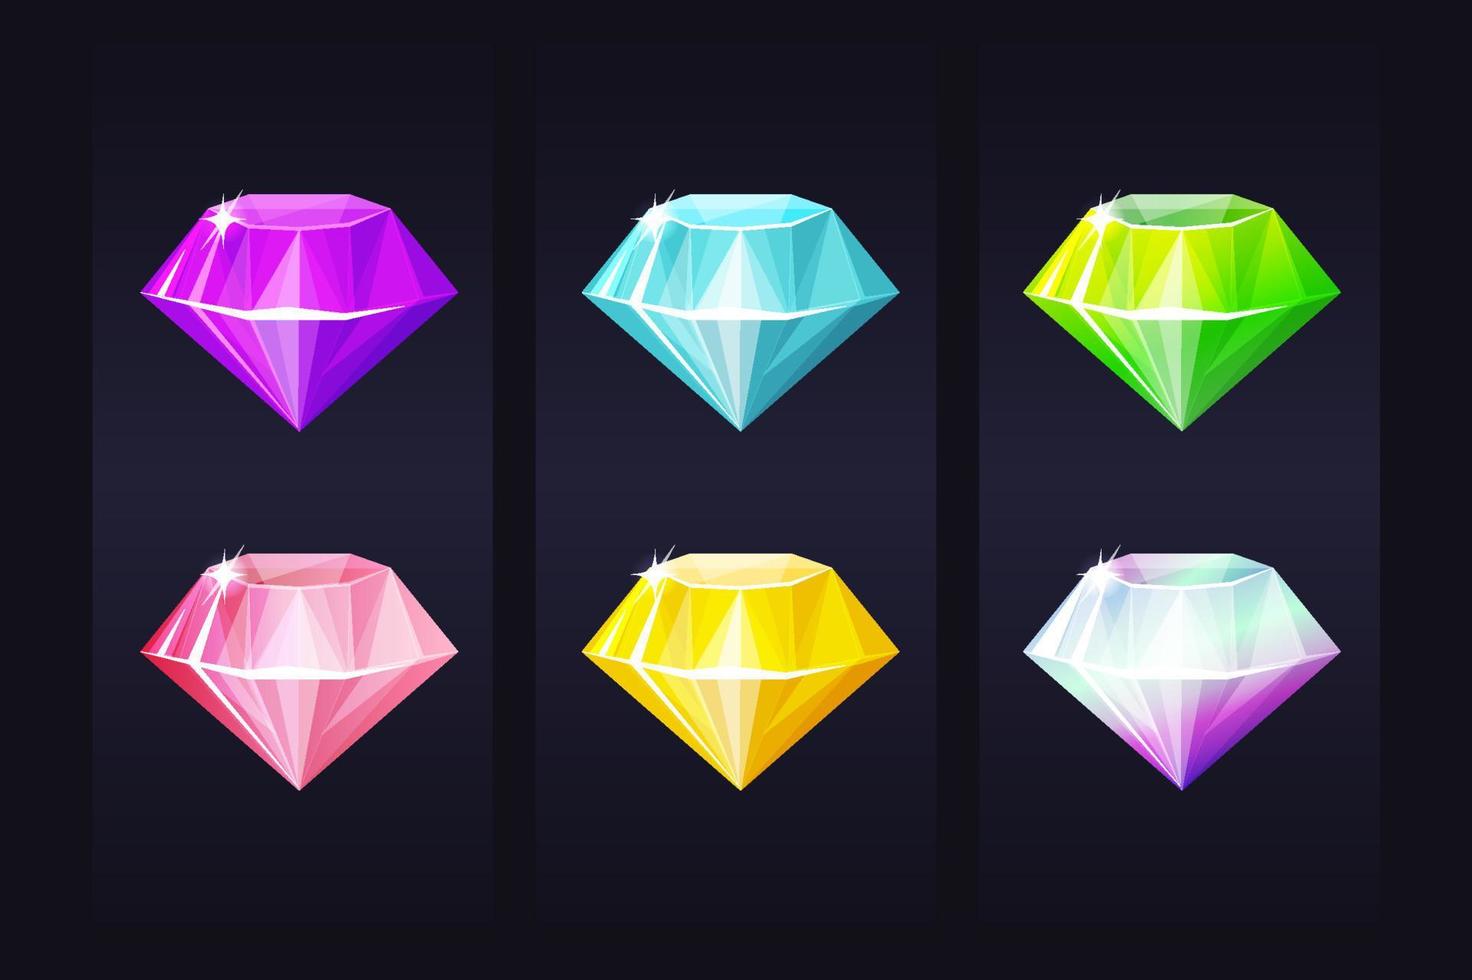 joya multicolor de diamantes, joyas preciosas brillantes para juegos de interfaz de usuario. vector